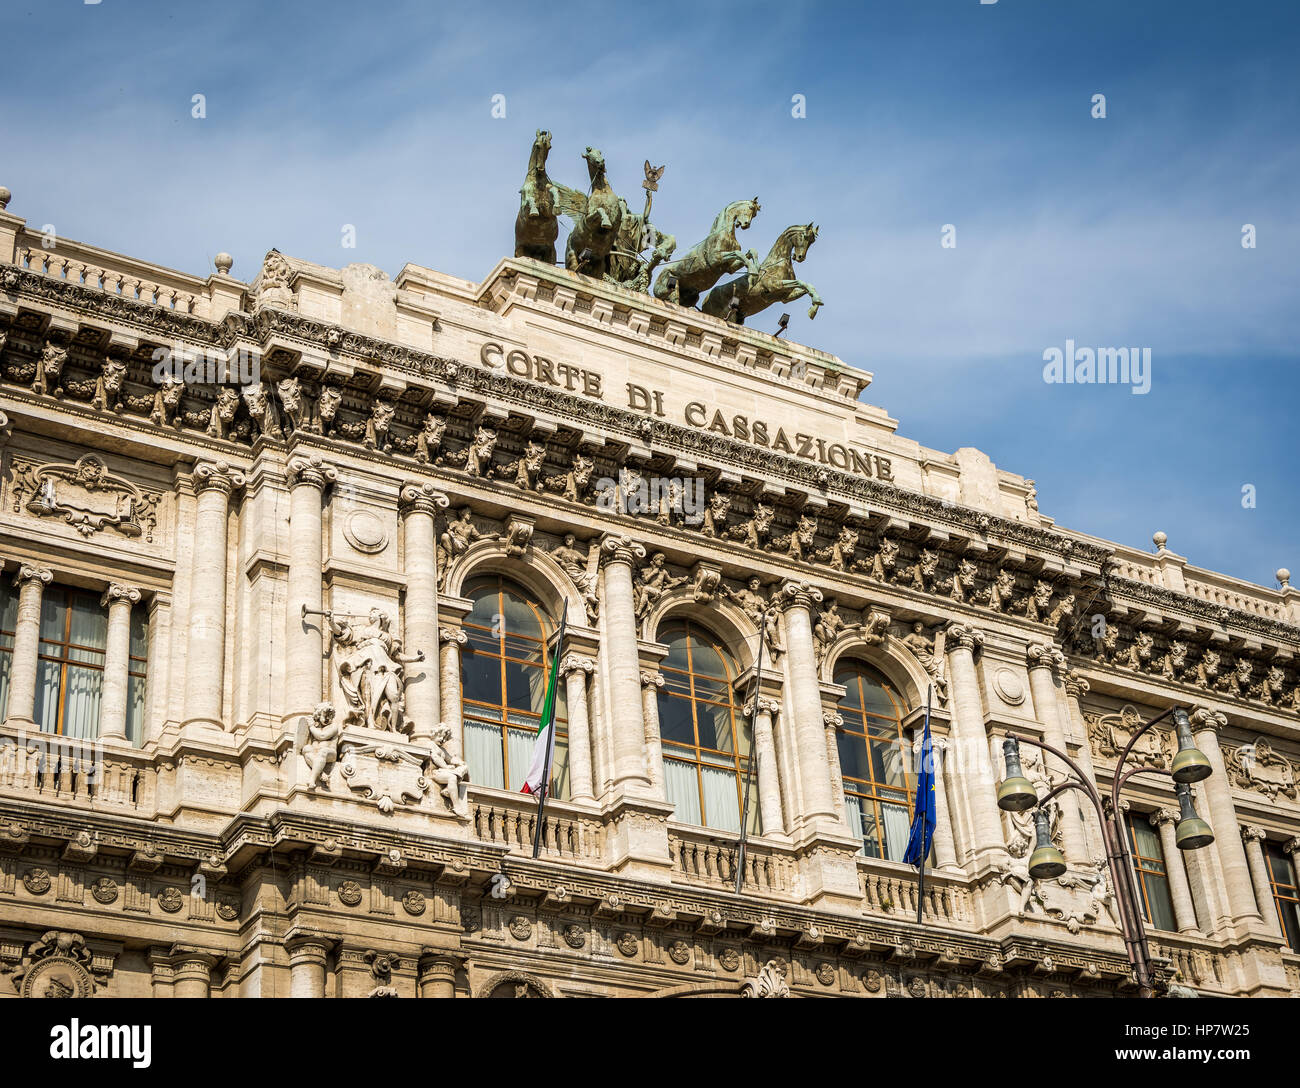 The stunning Corte Di Cassazione building in Rome, Italy Stock Photo